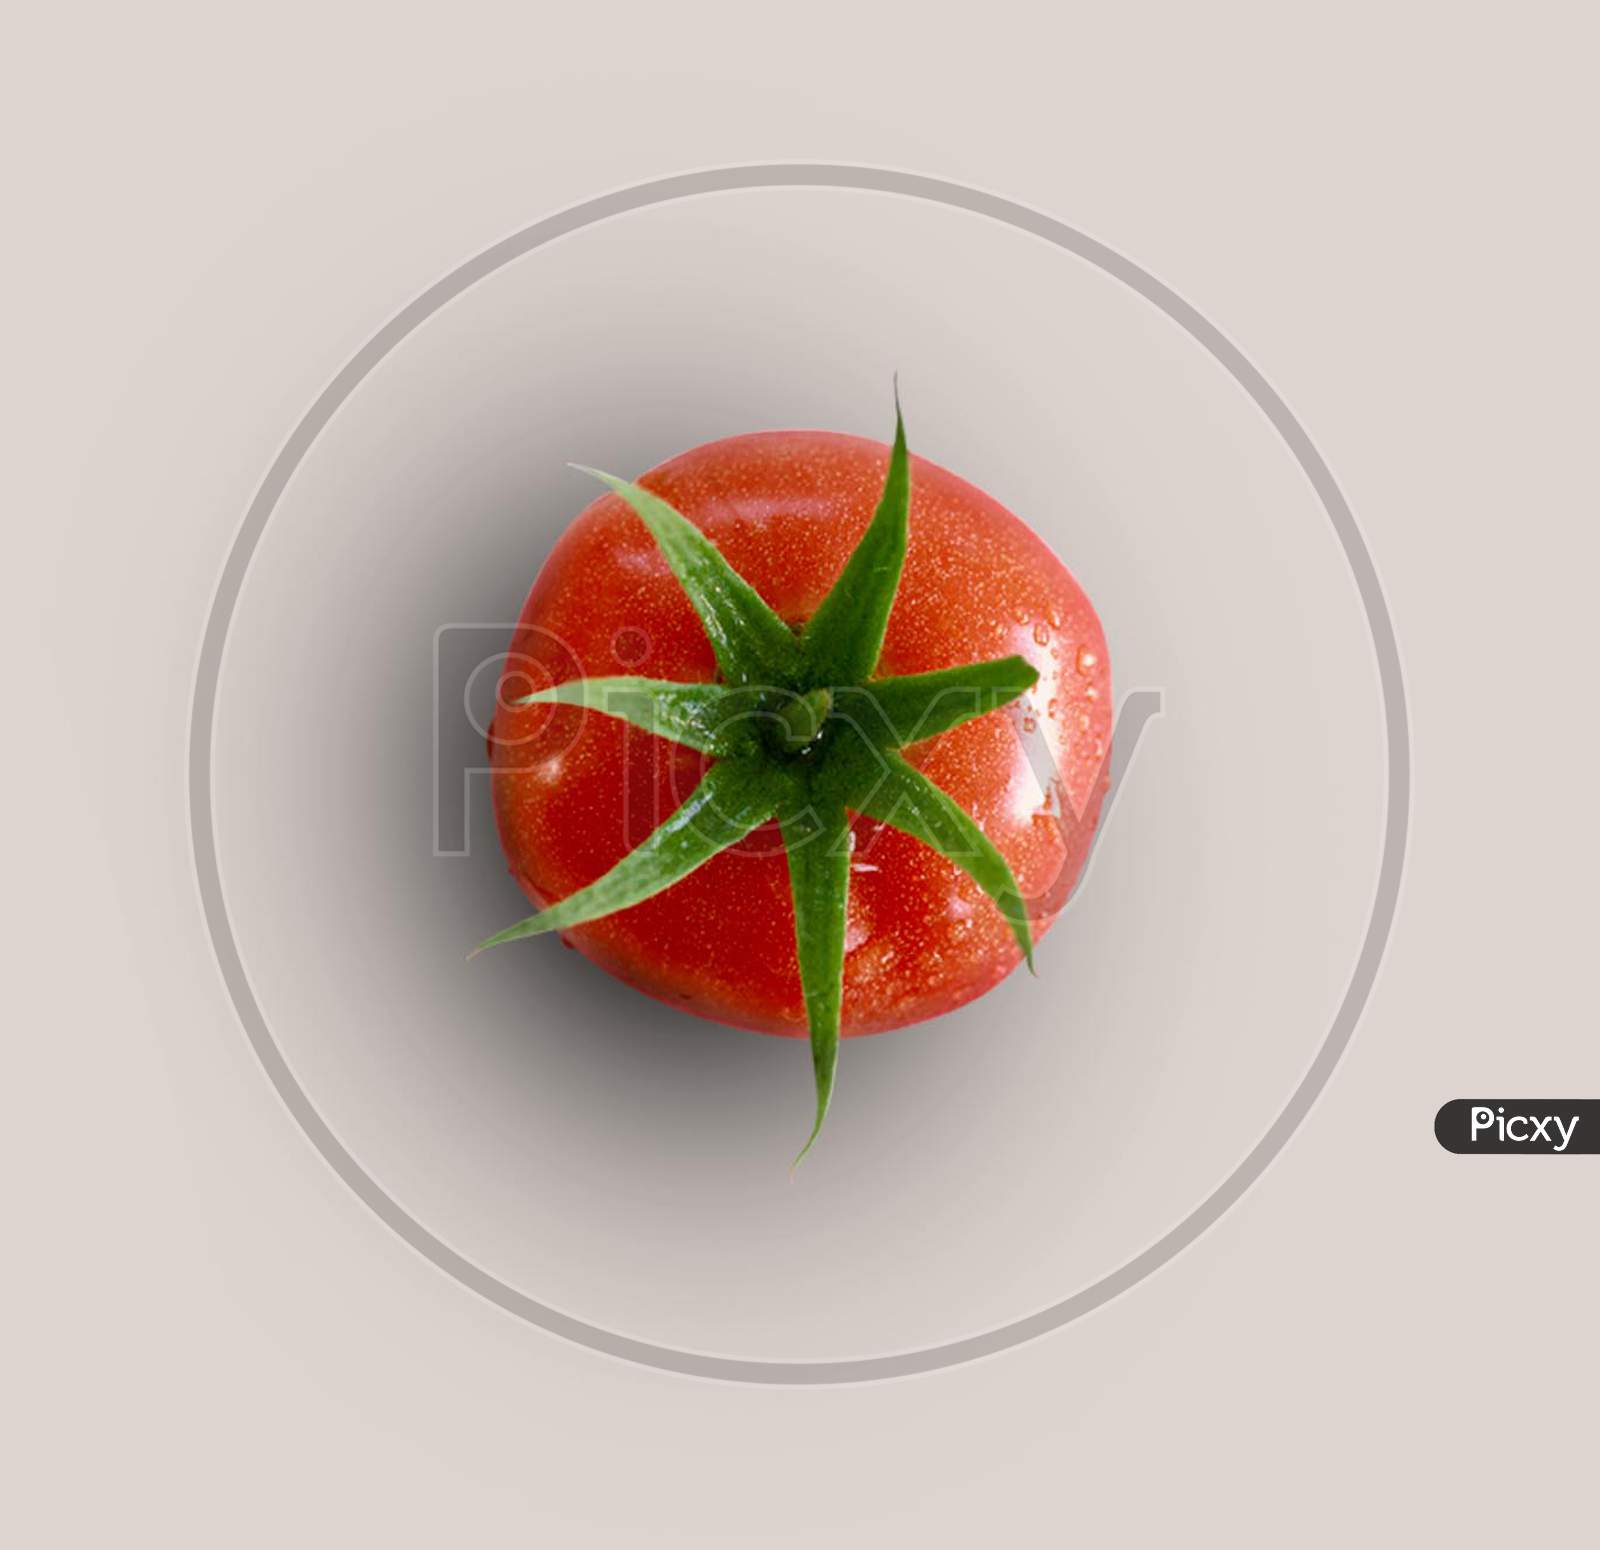 Pretty tomato